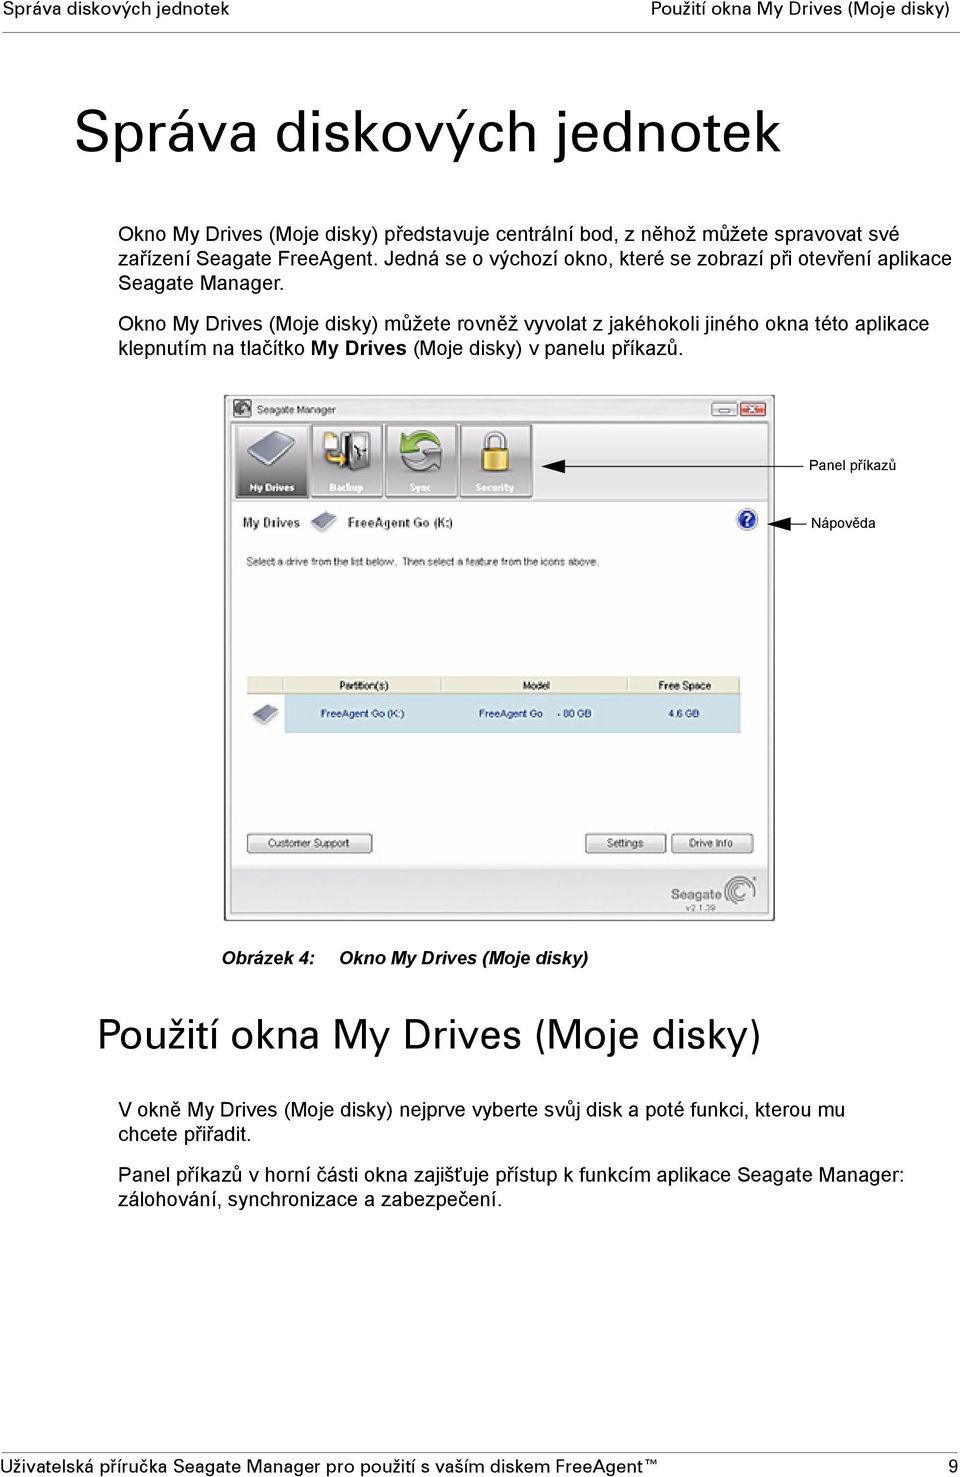 Okno My Drives (Moje disky) můžete rovněž vyvolat z jakéhokoli jiného okna této aplikace klepnutím na tlačítko My Drives (Moje disky) v panelu příkazů.